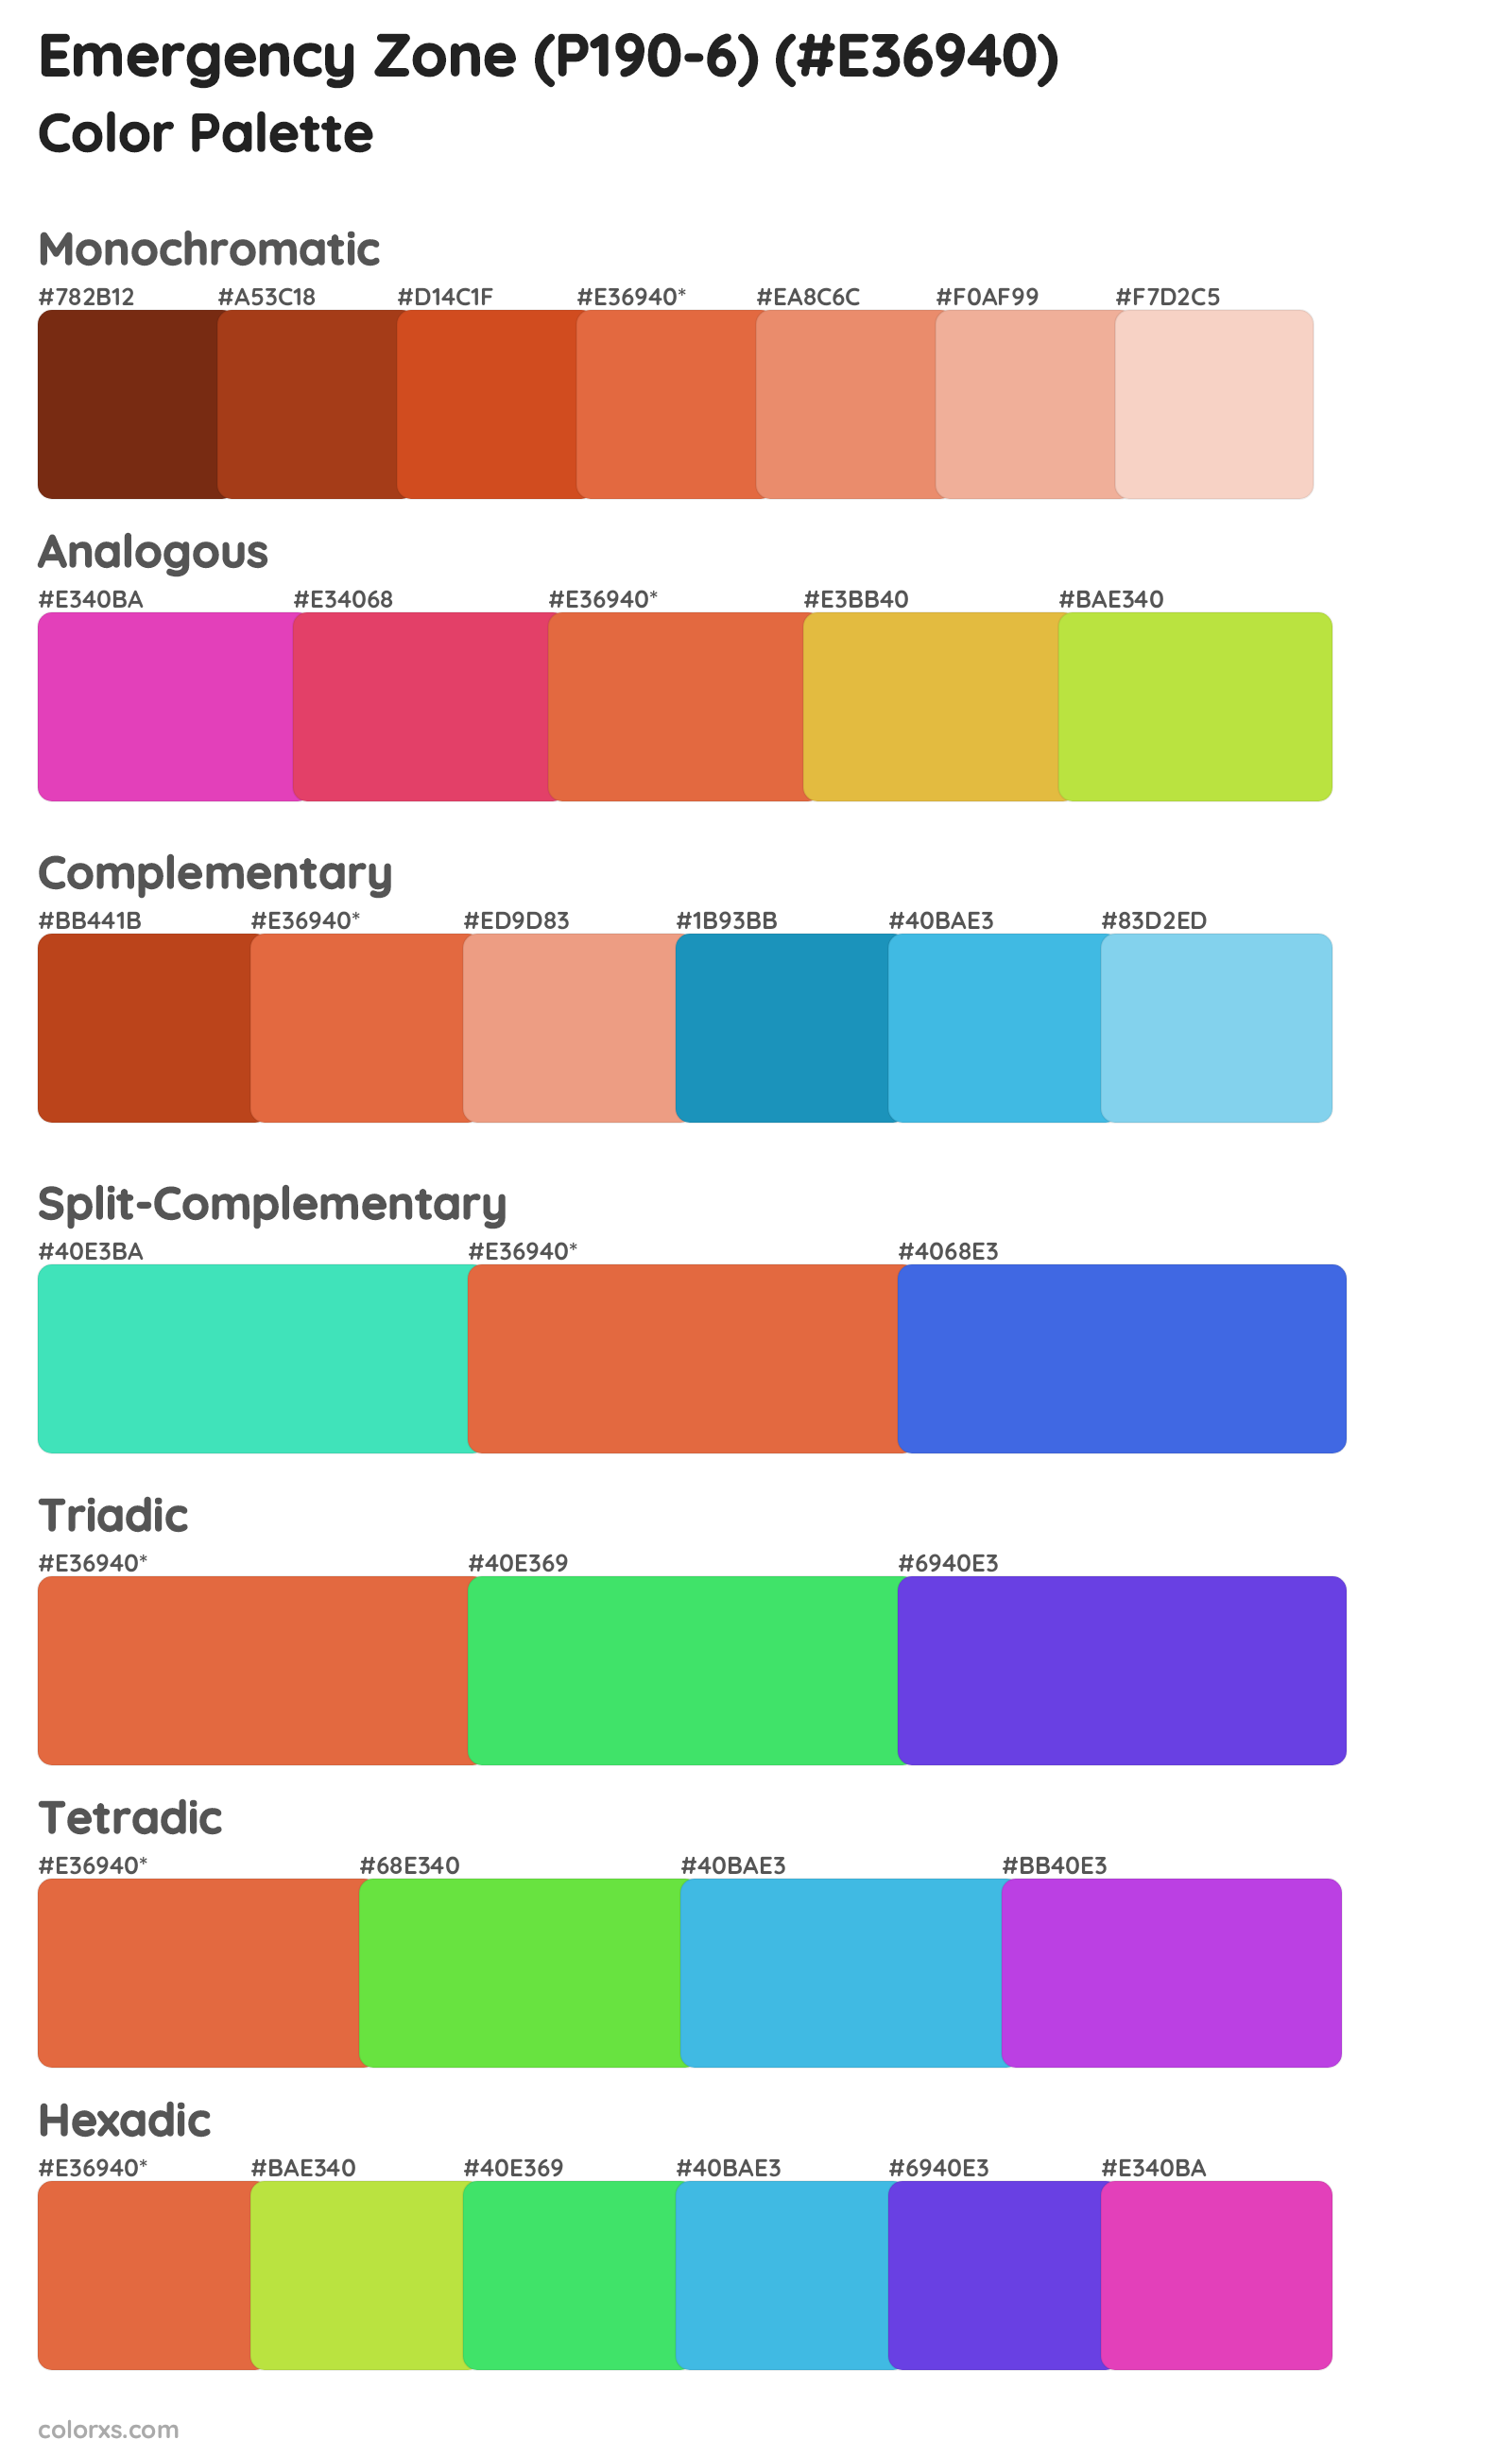 Emergency Zone (P190-6) Color Scheme Palettes